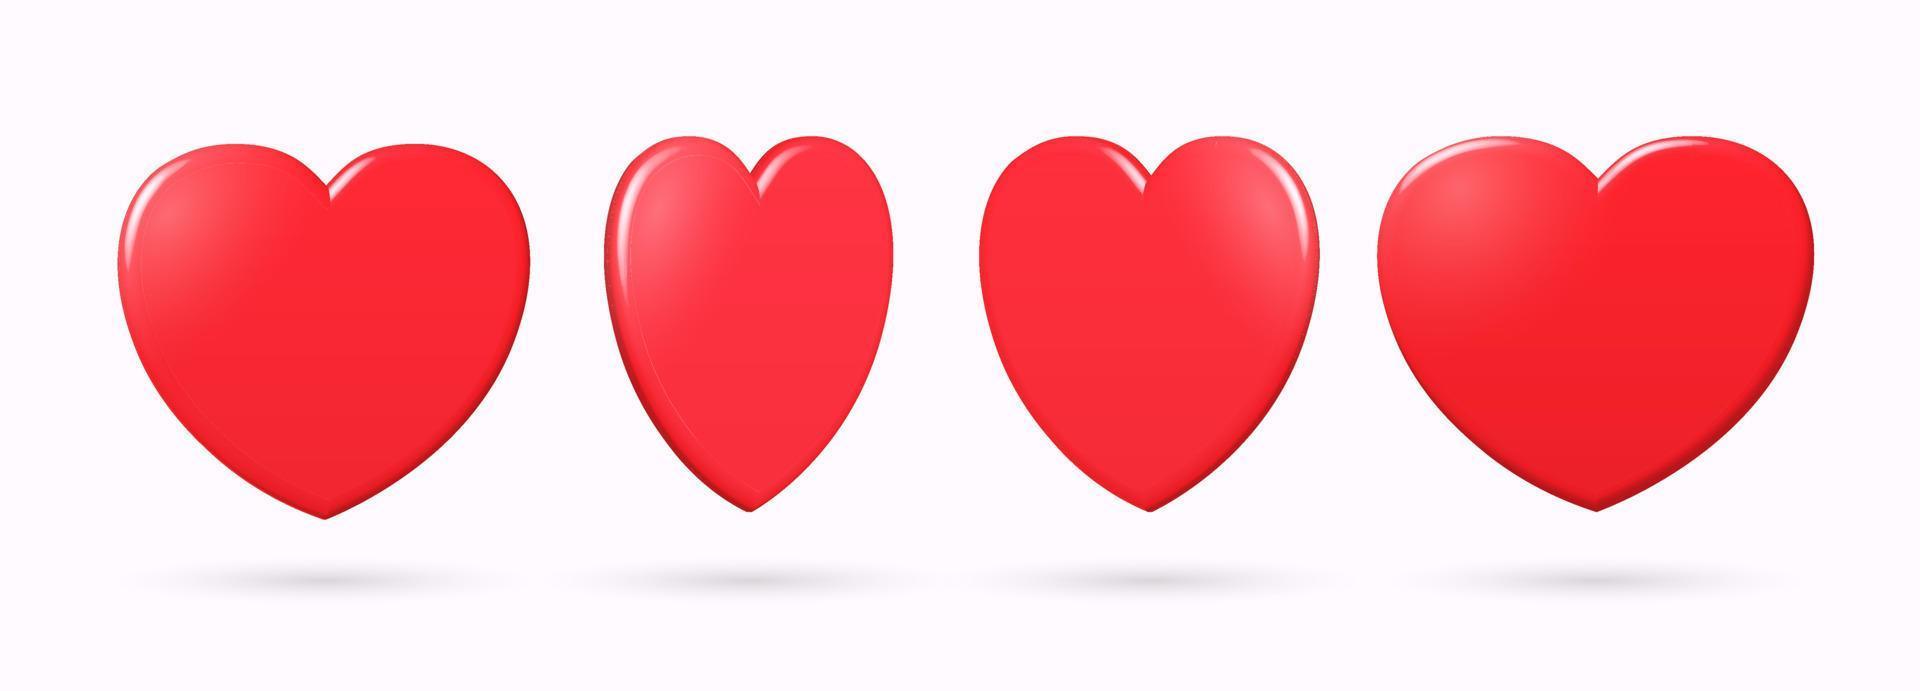 conjunto de corazones 3d. colección de símbolos de amor realistas en color rojo con varias vistas. elemento de diseño de ilustración vectorial. vector